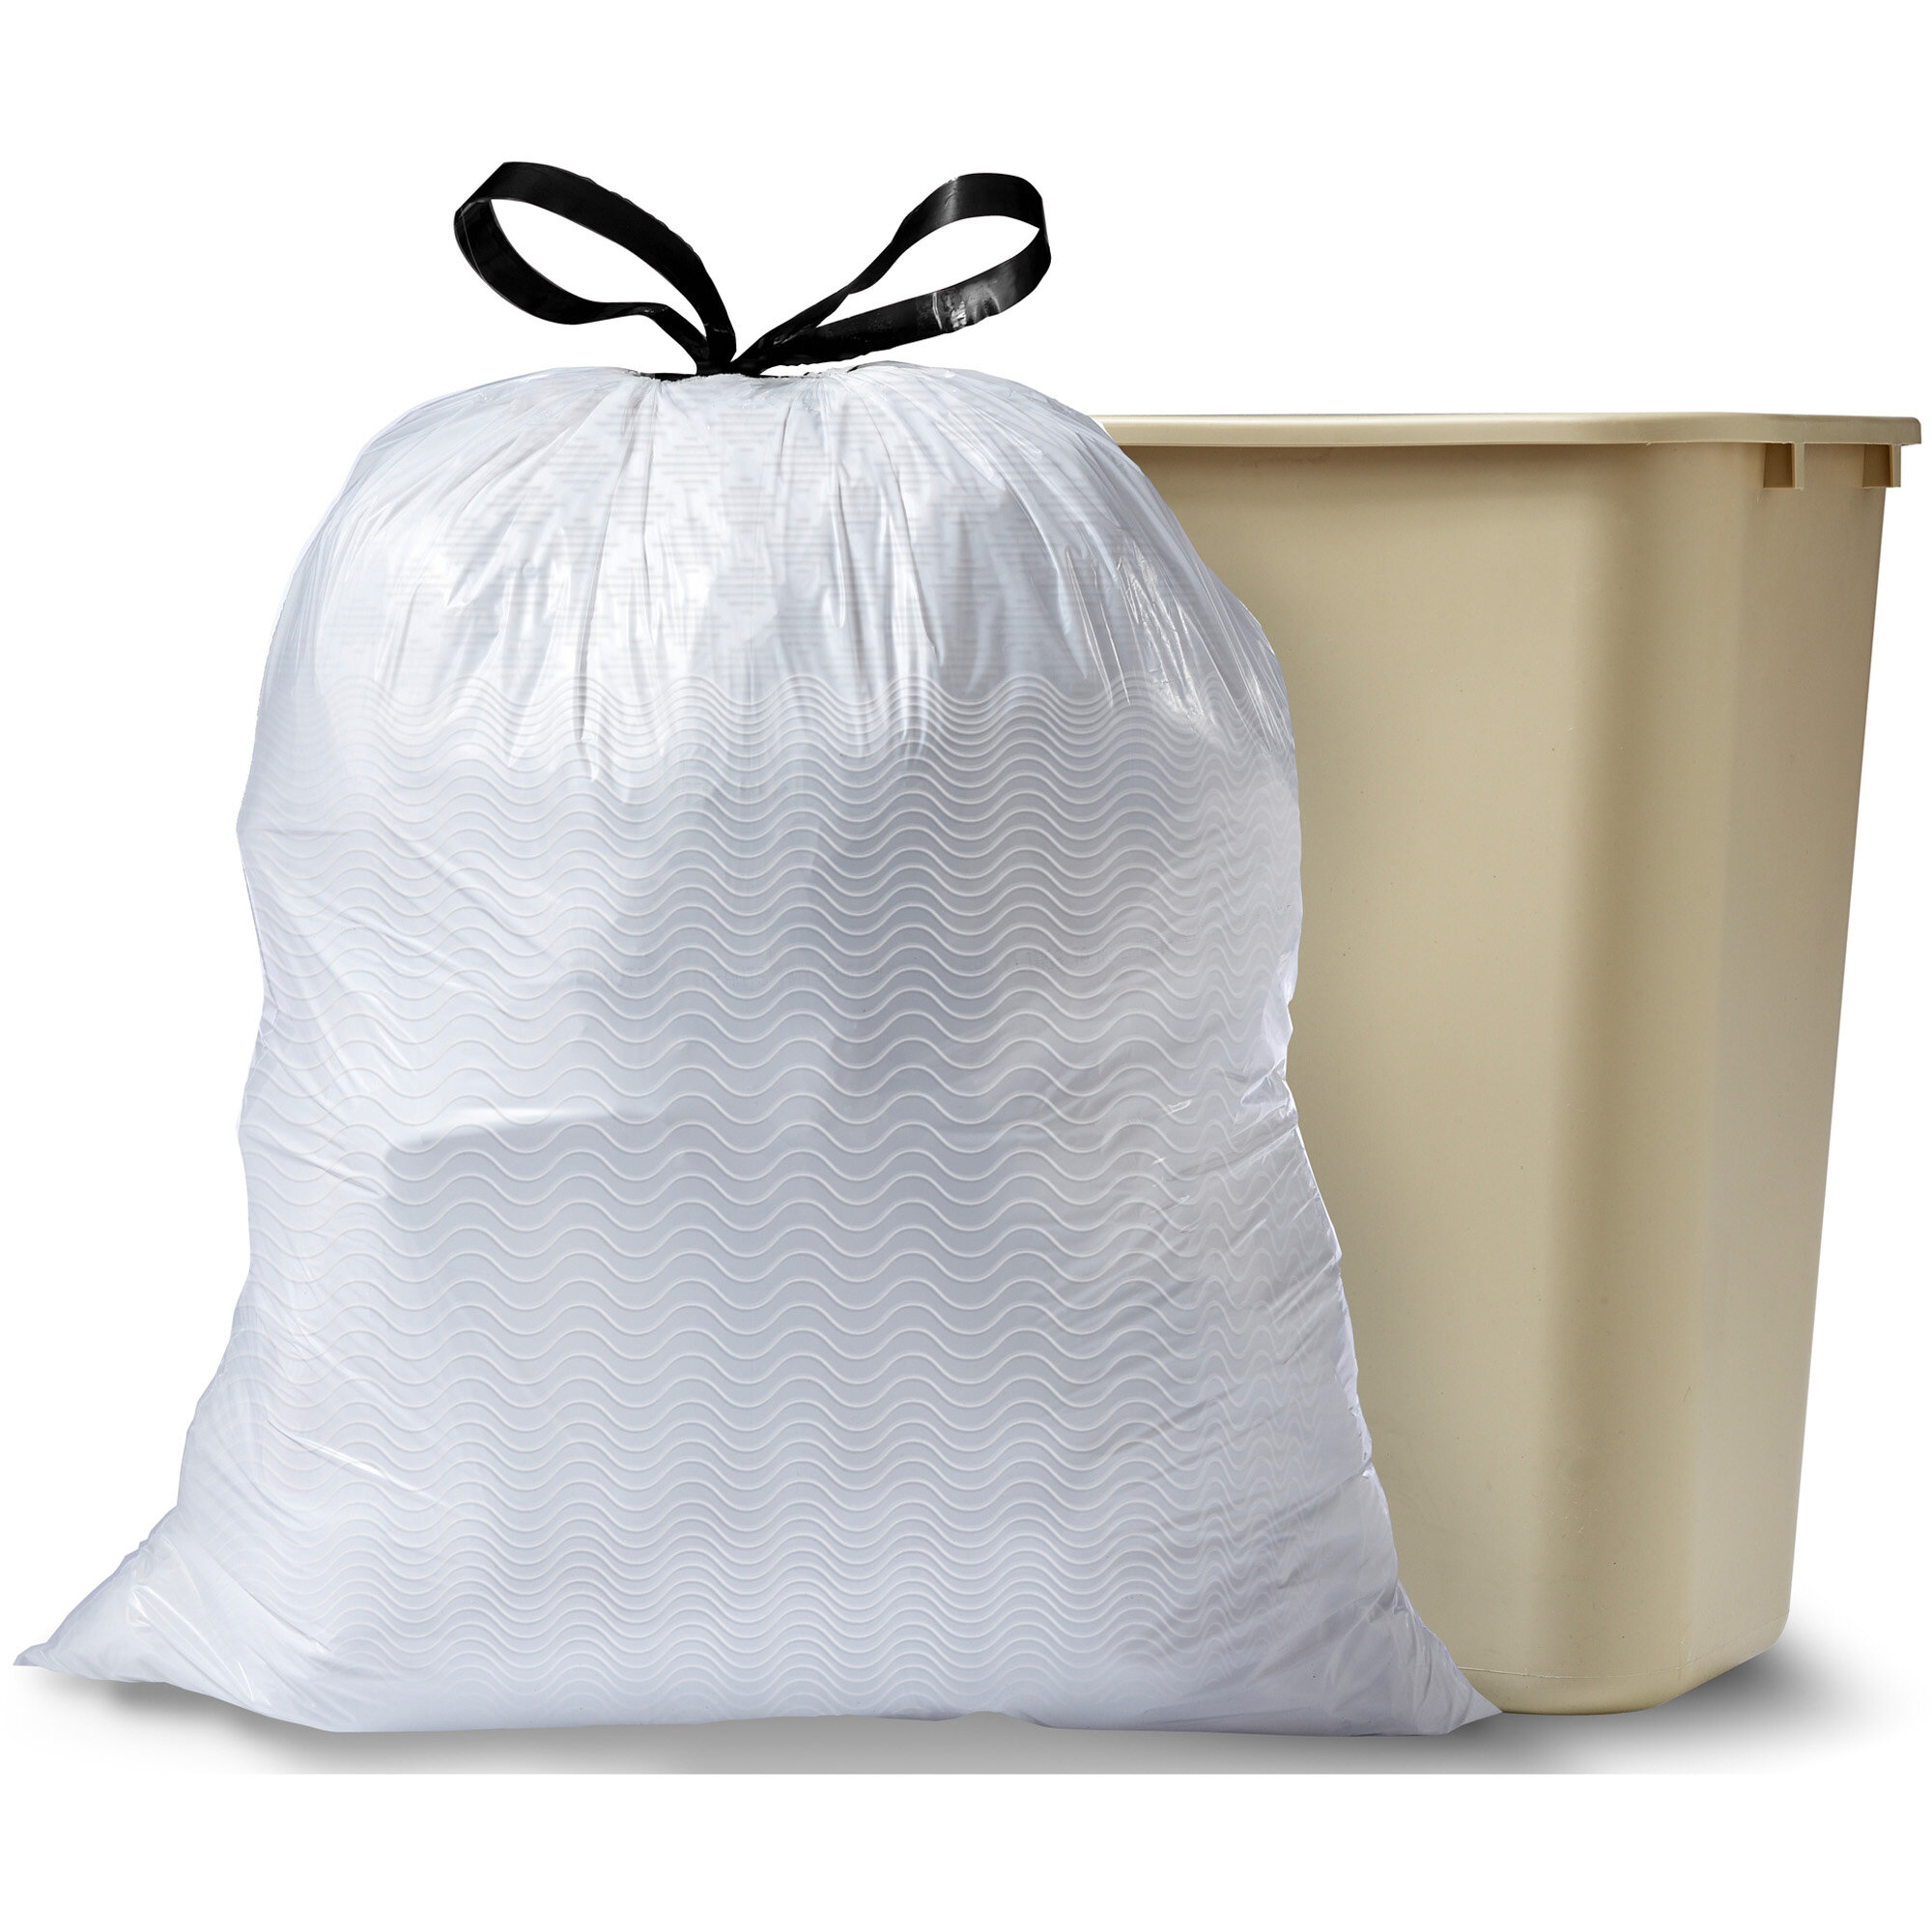 CLOROX 13 Gallons Plastic Trash Bags - 240 Count